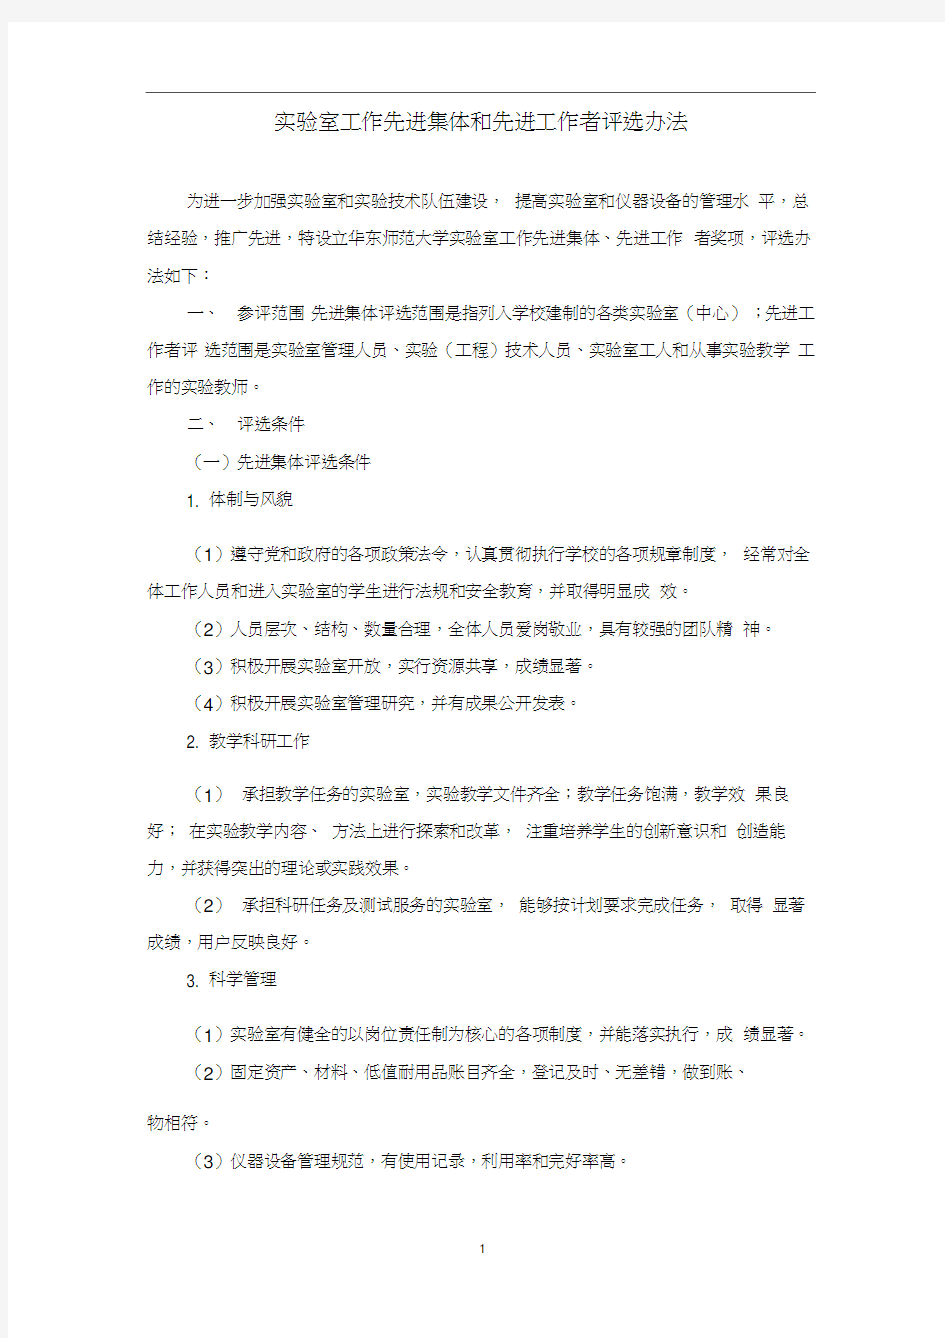 北京大学试验室工作先进集体和先进工作者评选办法-华东师范大学